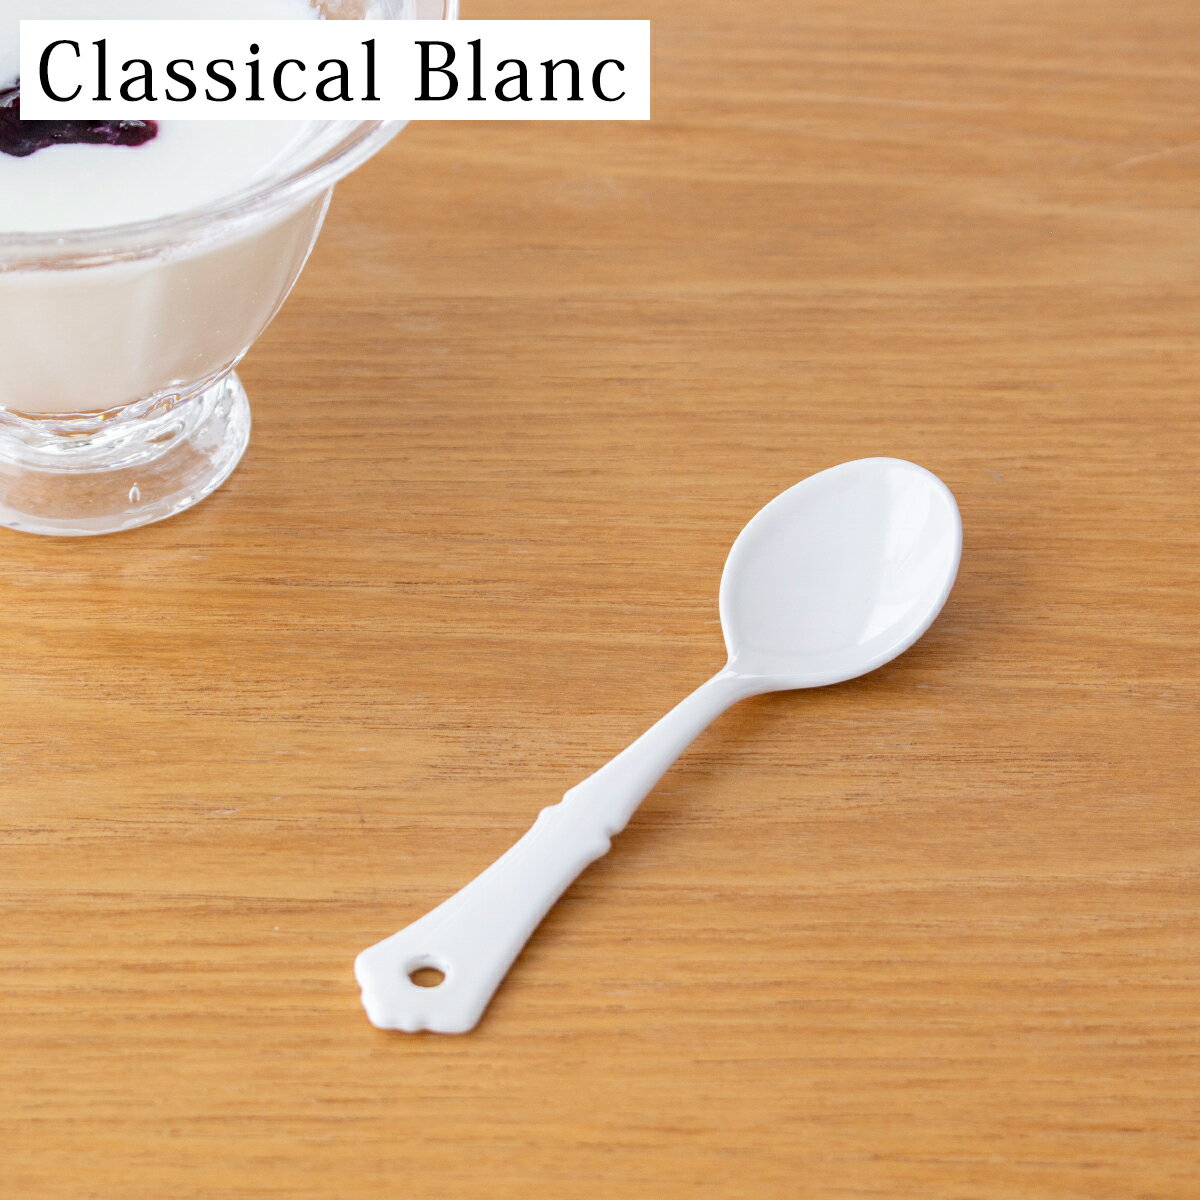 プチスプーン 琺瑯 ホーロー カトラリー Classical Blanc クラシカルブラン 高桑金属 白 ホワイト 子供用 スプーン 日本製